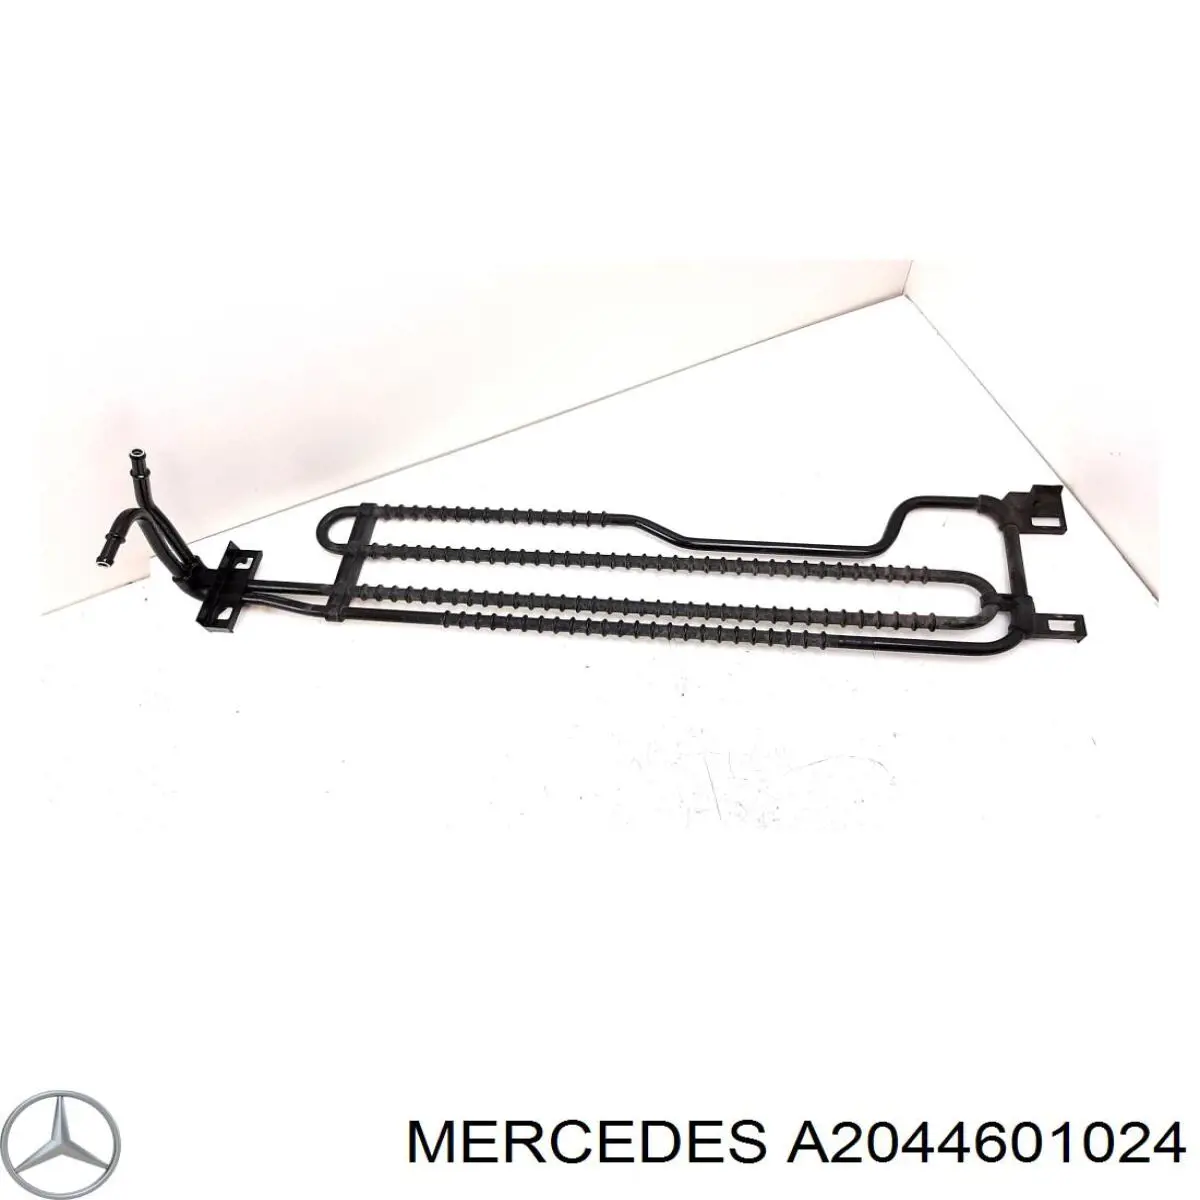 2044601024 Mercedes radiador da direção hidrâulica assistida